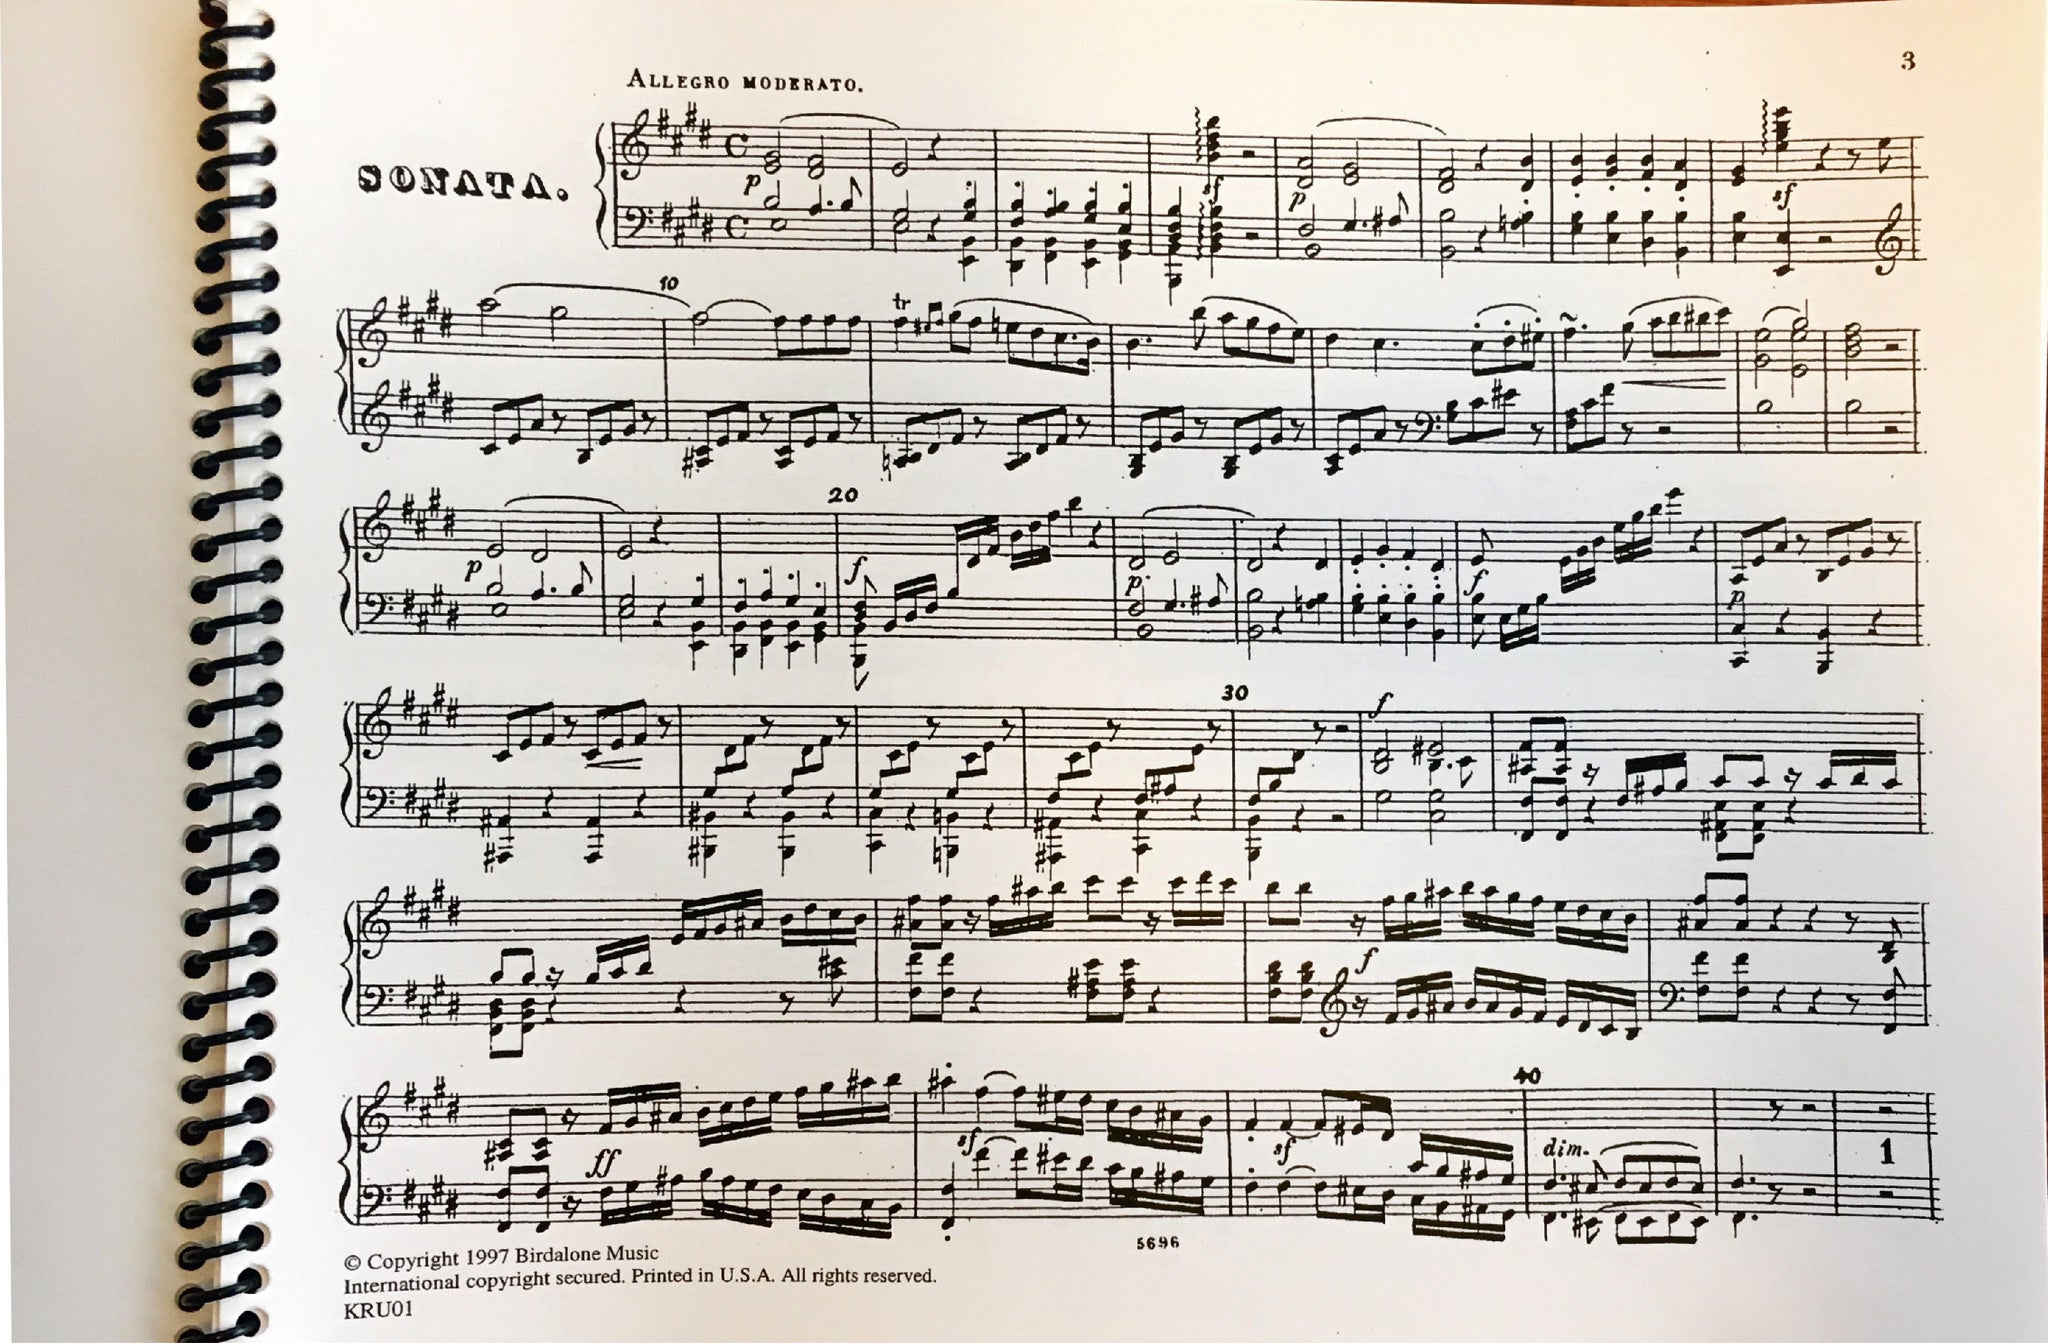 Krufft, Nicolas de (1779-1818): Sonata in E Major for Horn & Piano